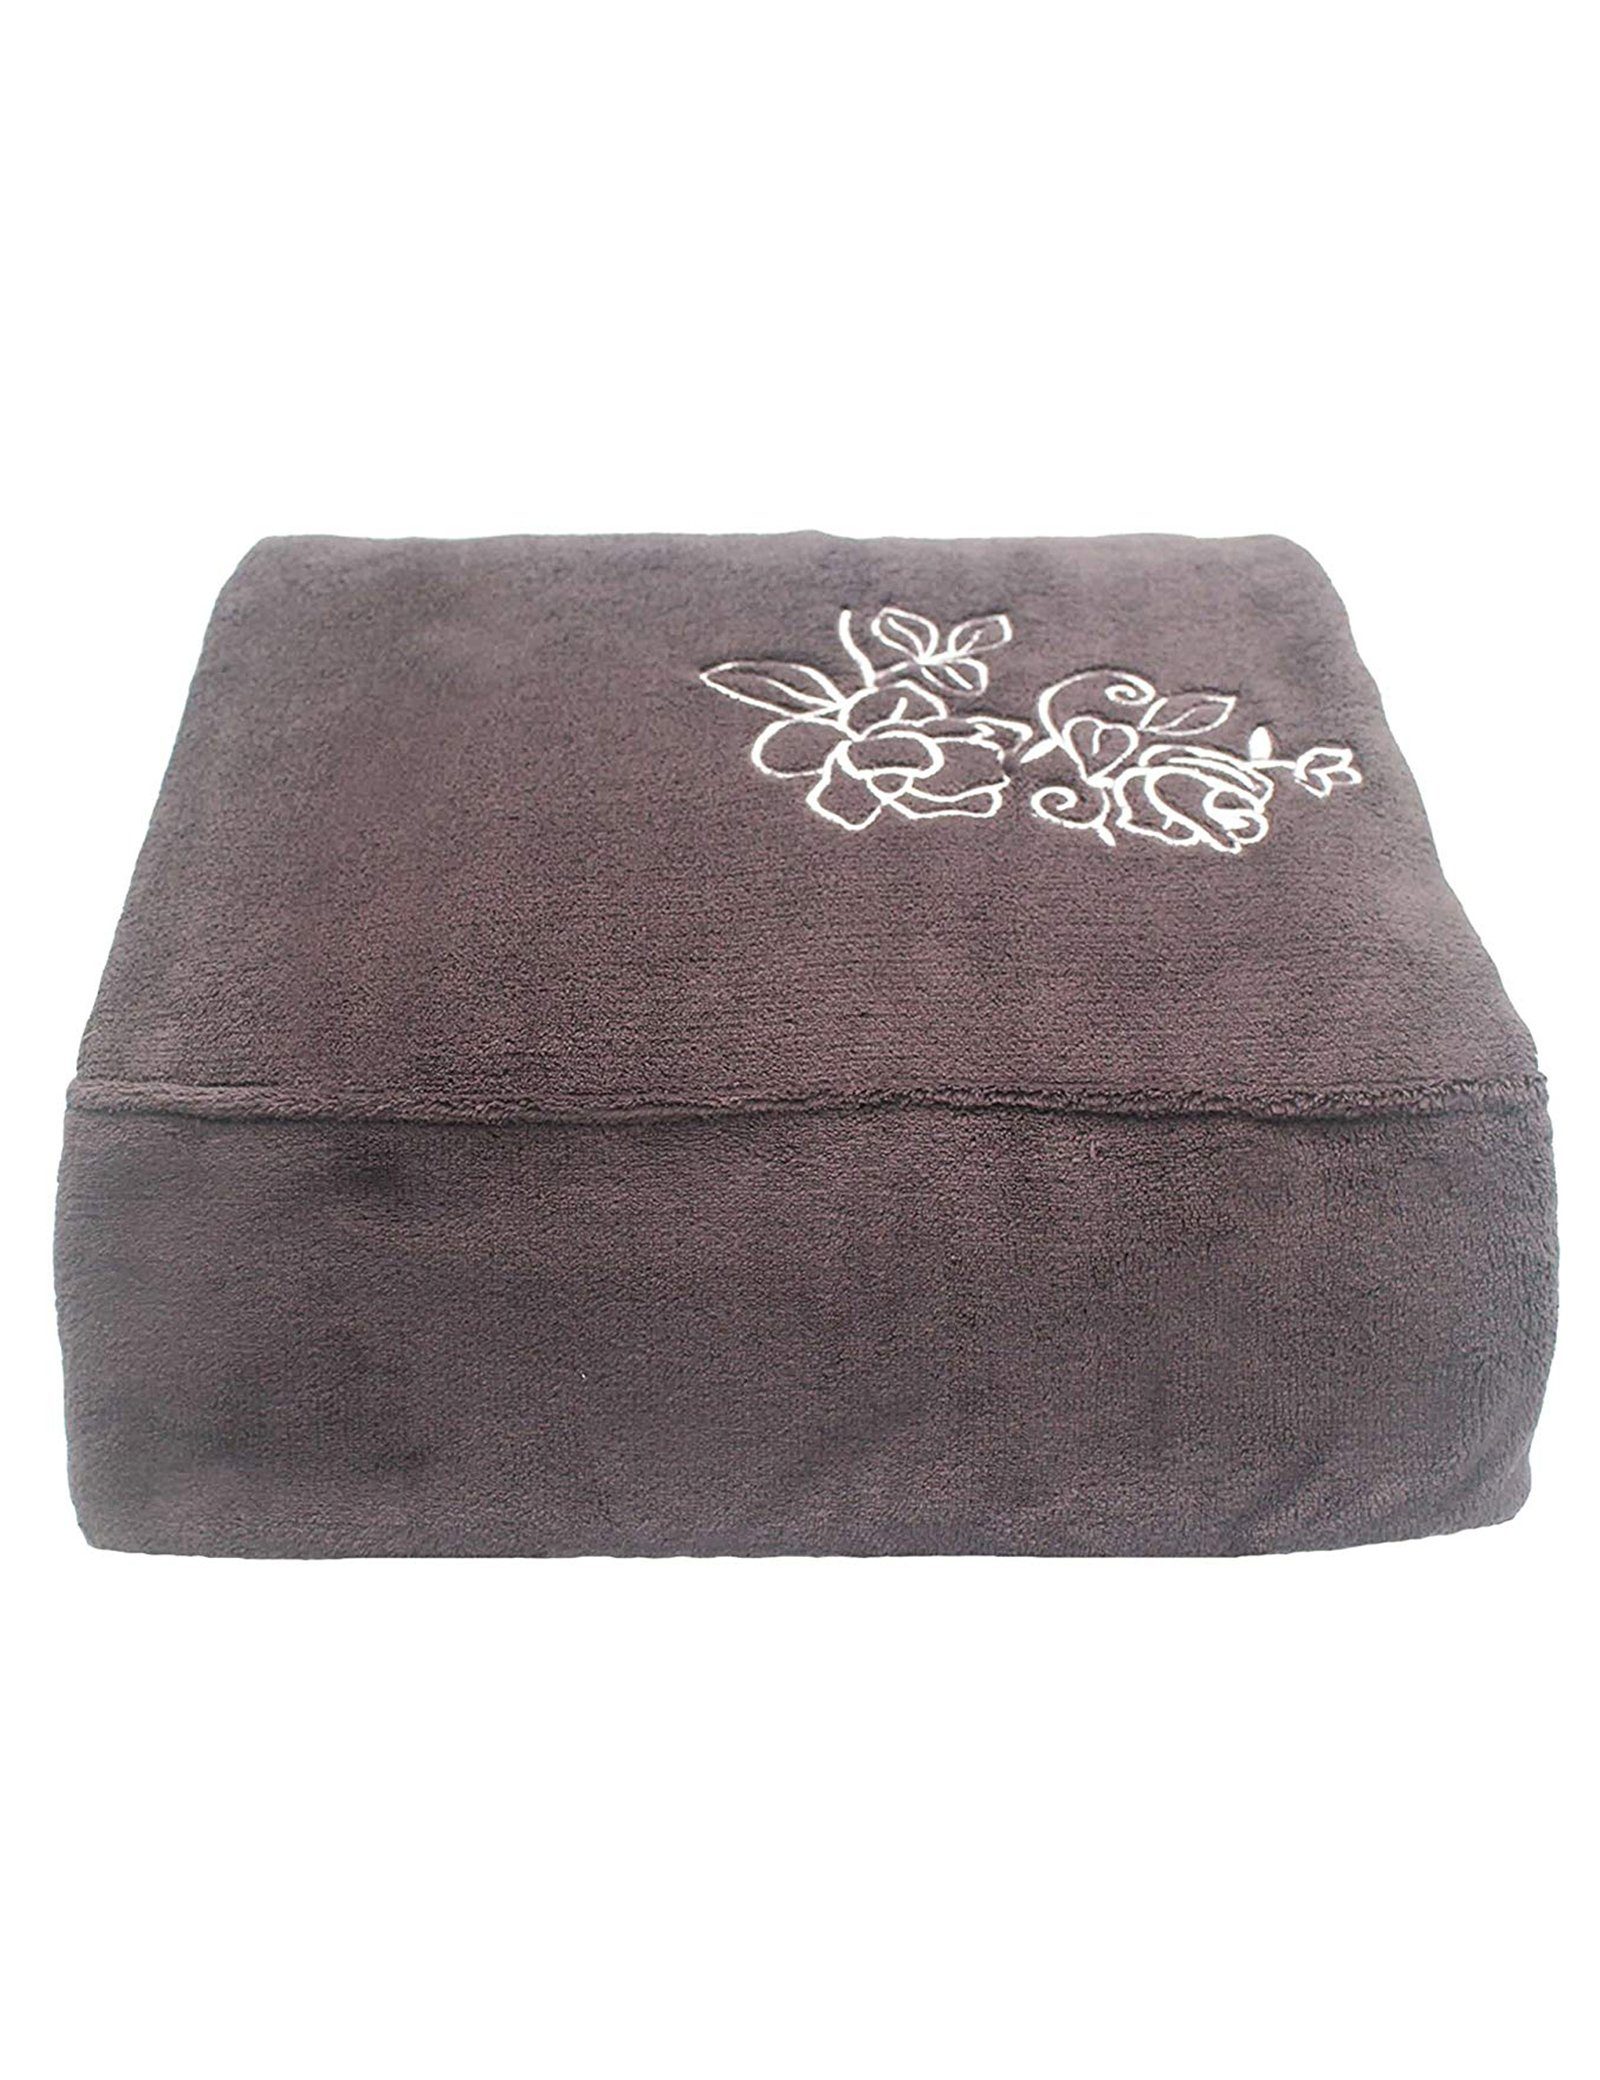 Wohndecke Kunstfaserdecken / Micro Fiber Blanket mit Embroidered Schlafdecke, RAIKOU, aus super weichem Kuschelfleece, 200cmx150cm Coffee